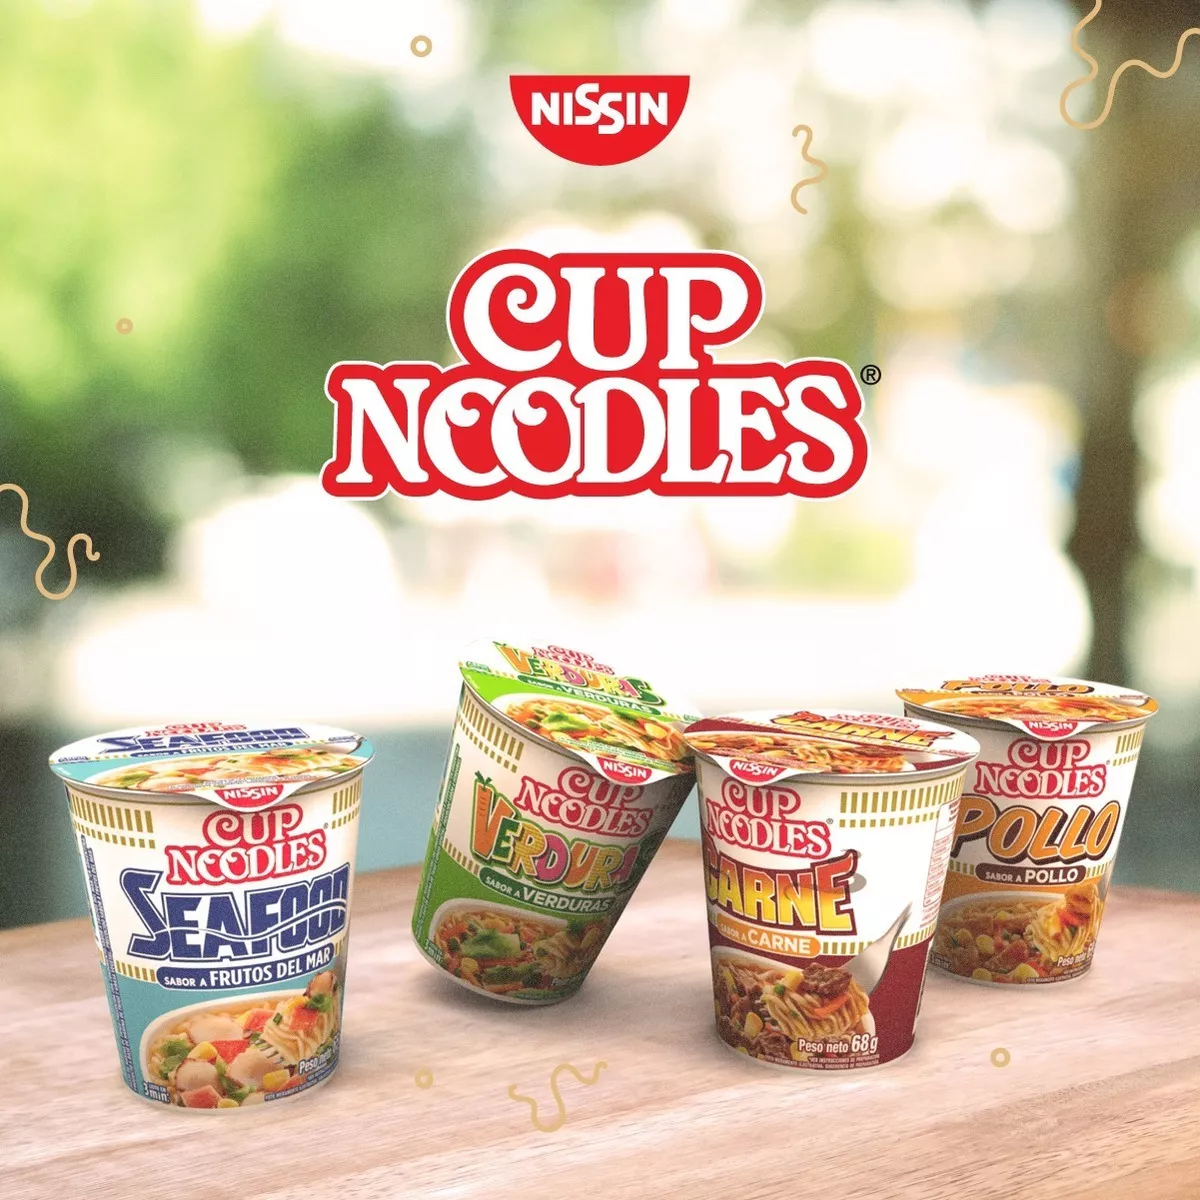 Primera imagen para búsqueda de cup noodles